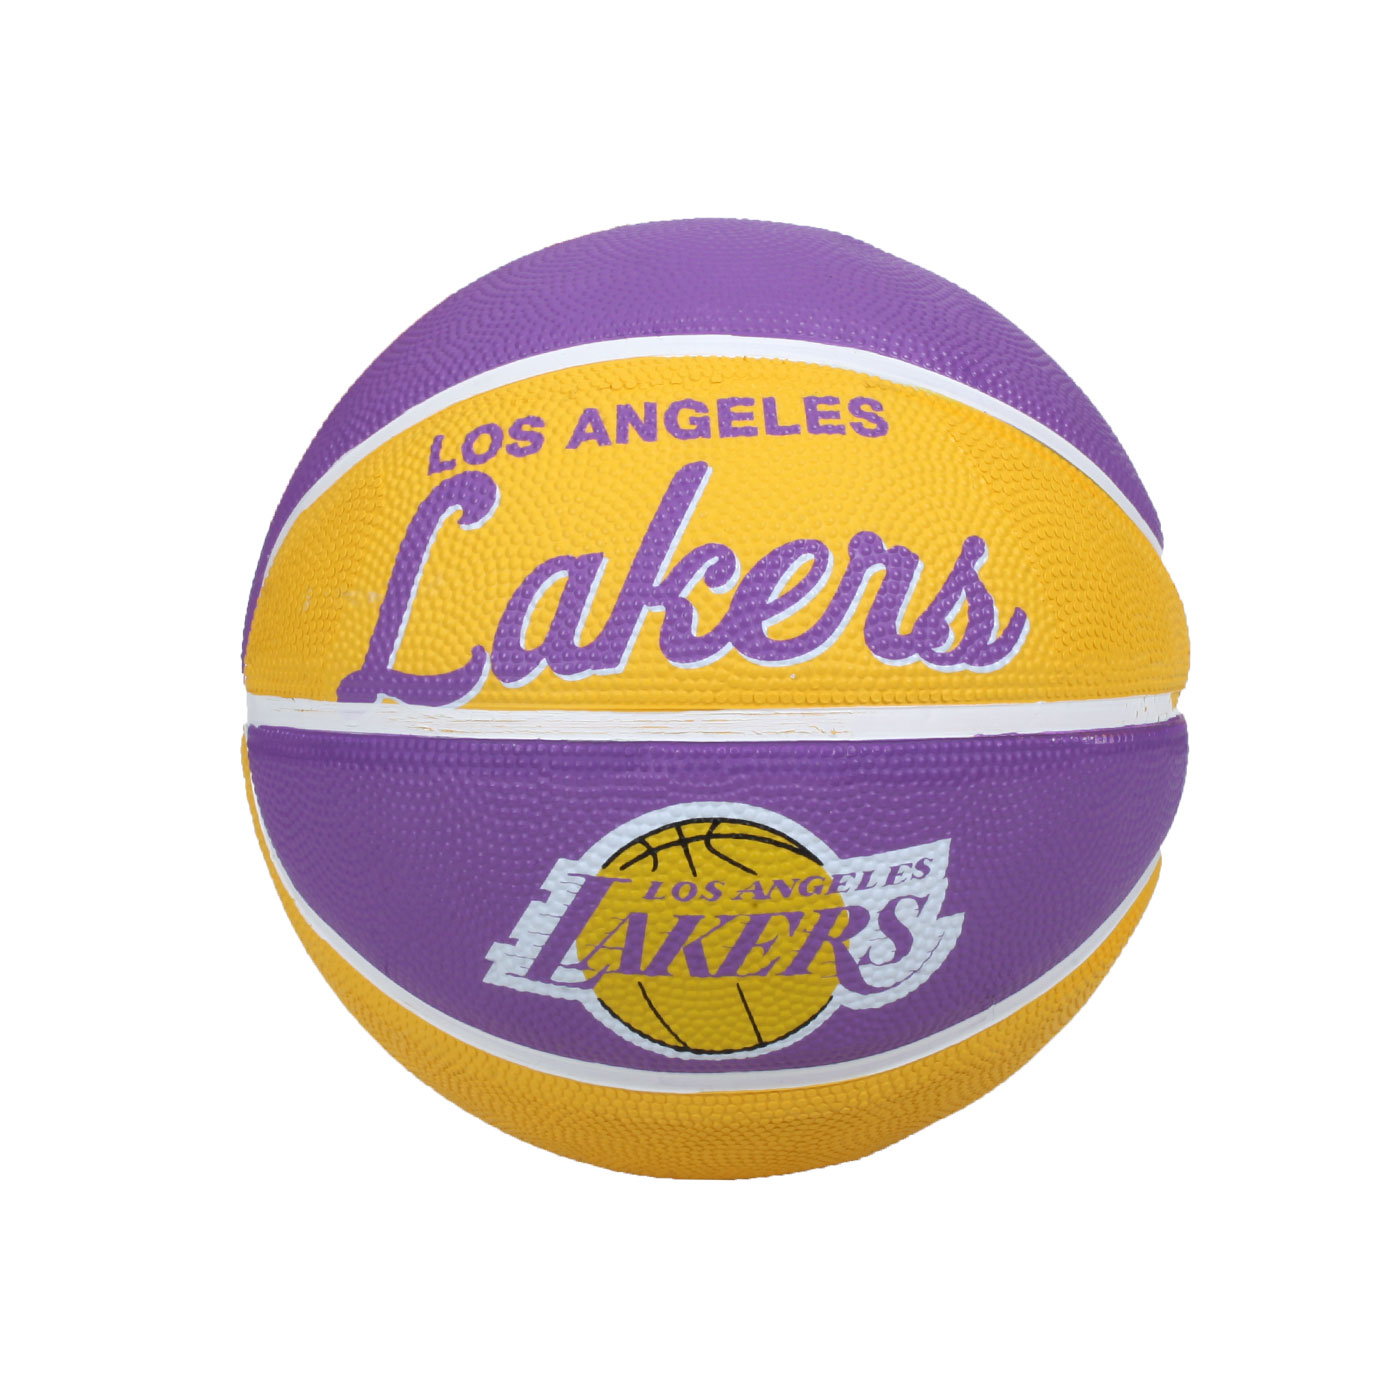 WILSON NBA隊徽系列橡膠籃球-復古湖人隊#3 WTB3200XBLAL - 紫黃白